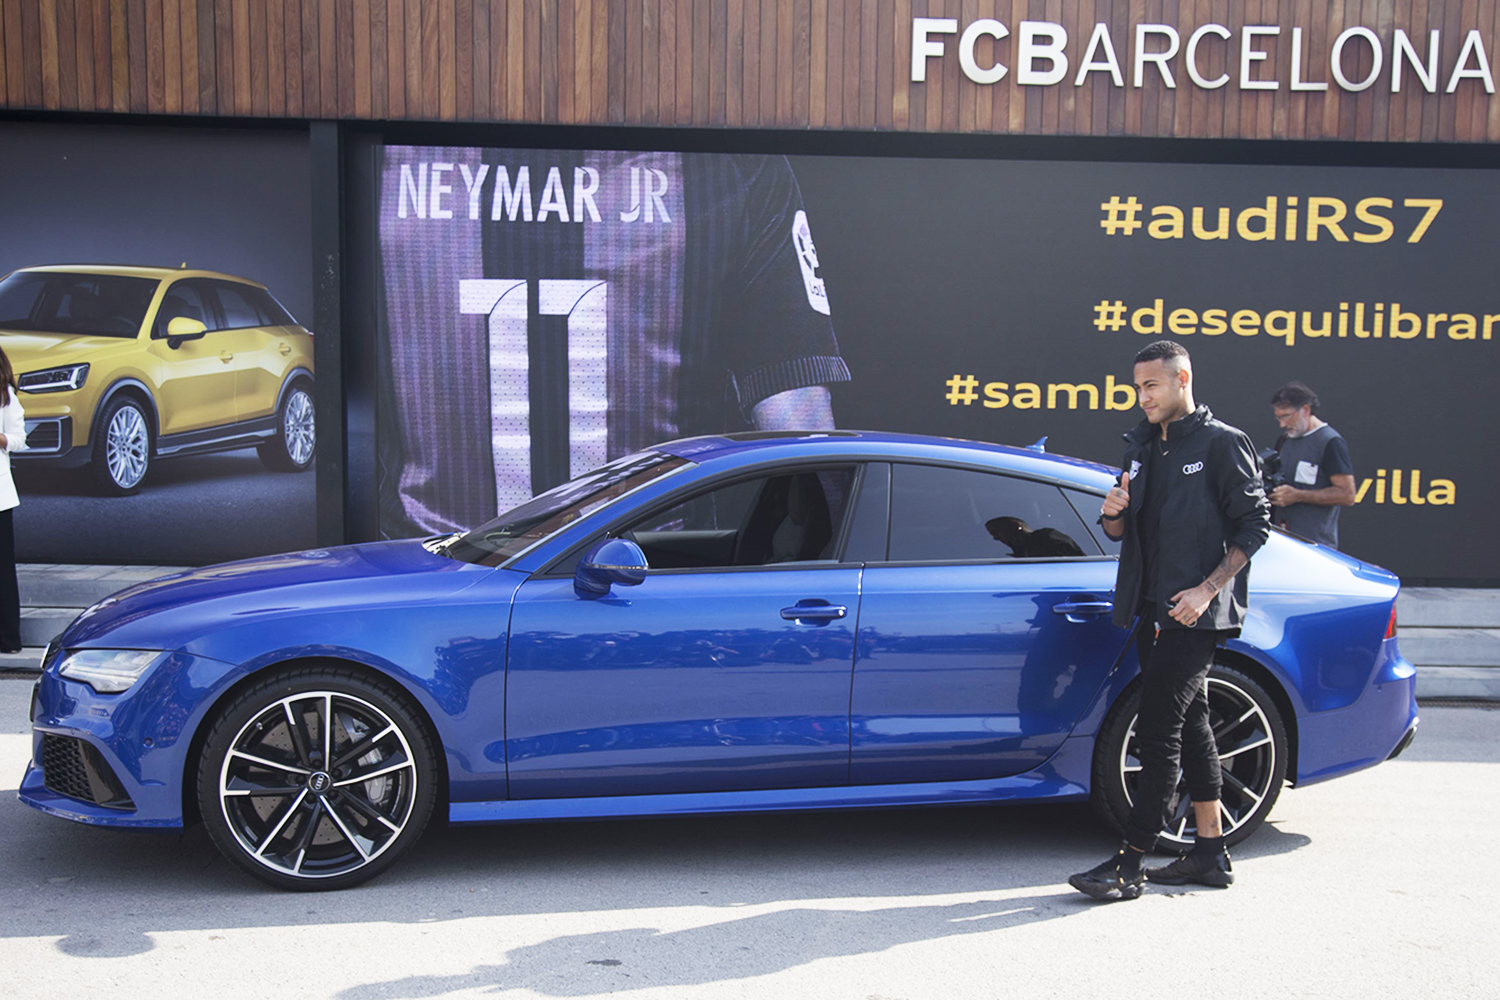 O jogador do Barcelona, Neymar, recebe novo carro da Audi, no estádio Camp Nou - 27/10/2016